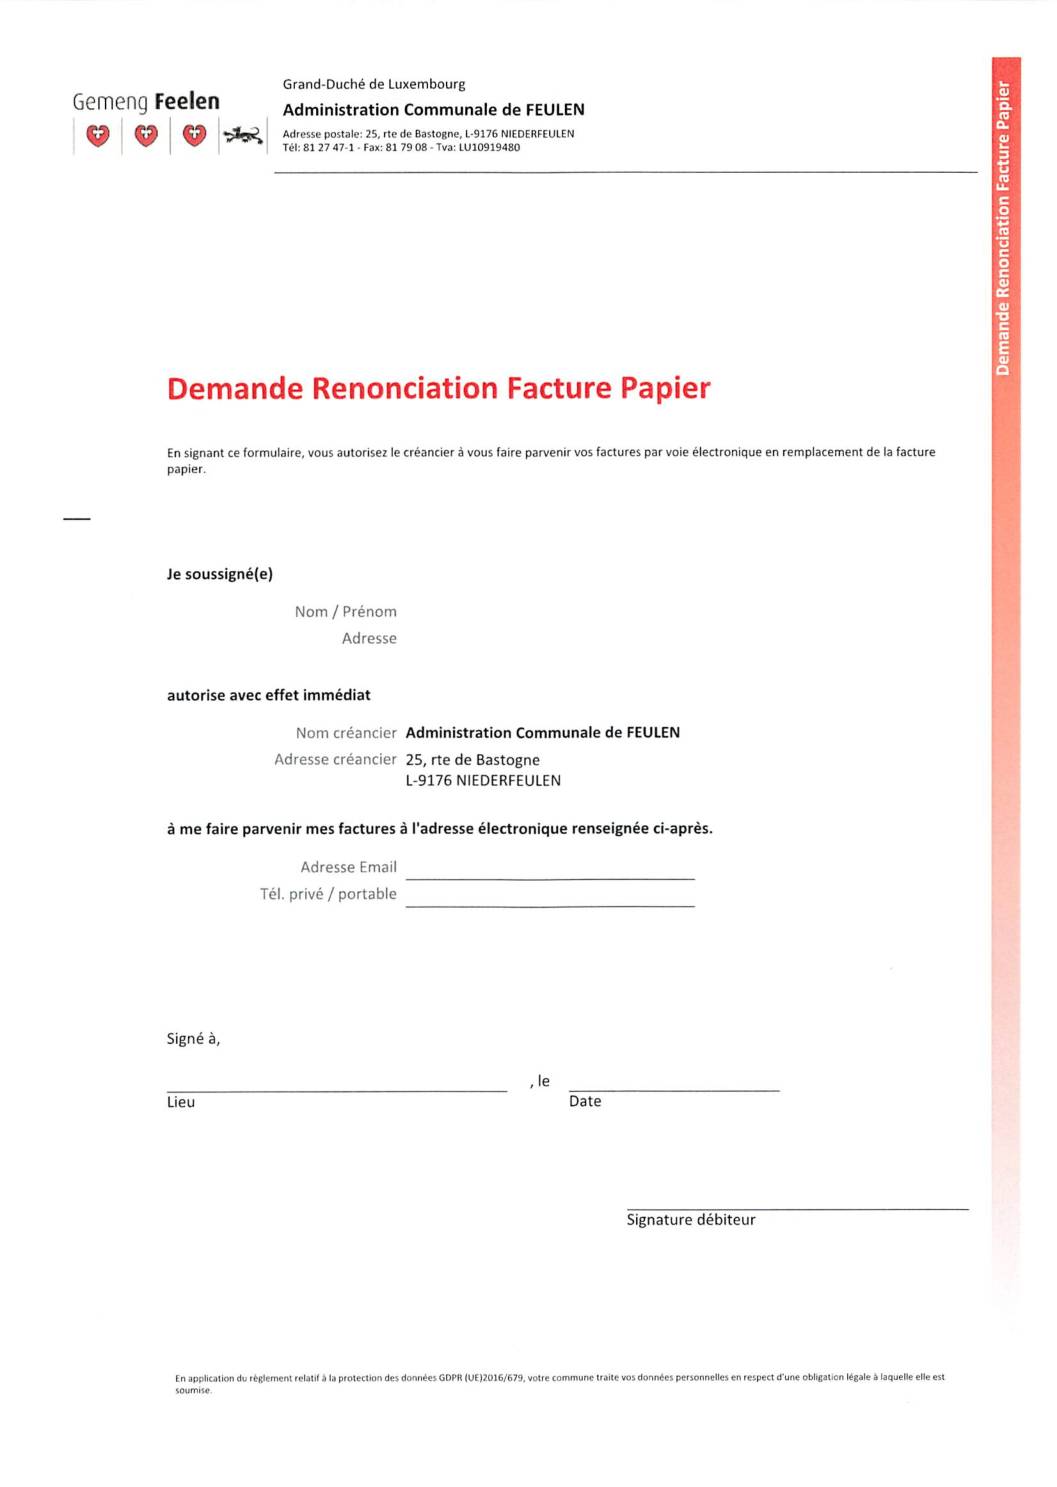 Demande Renonciation facture papier